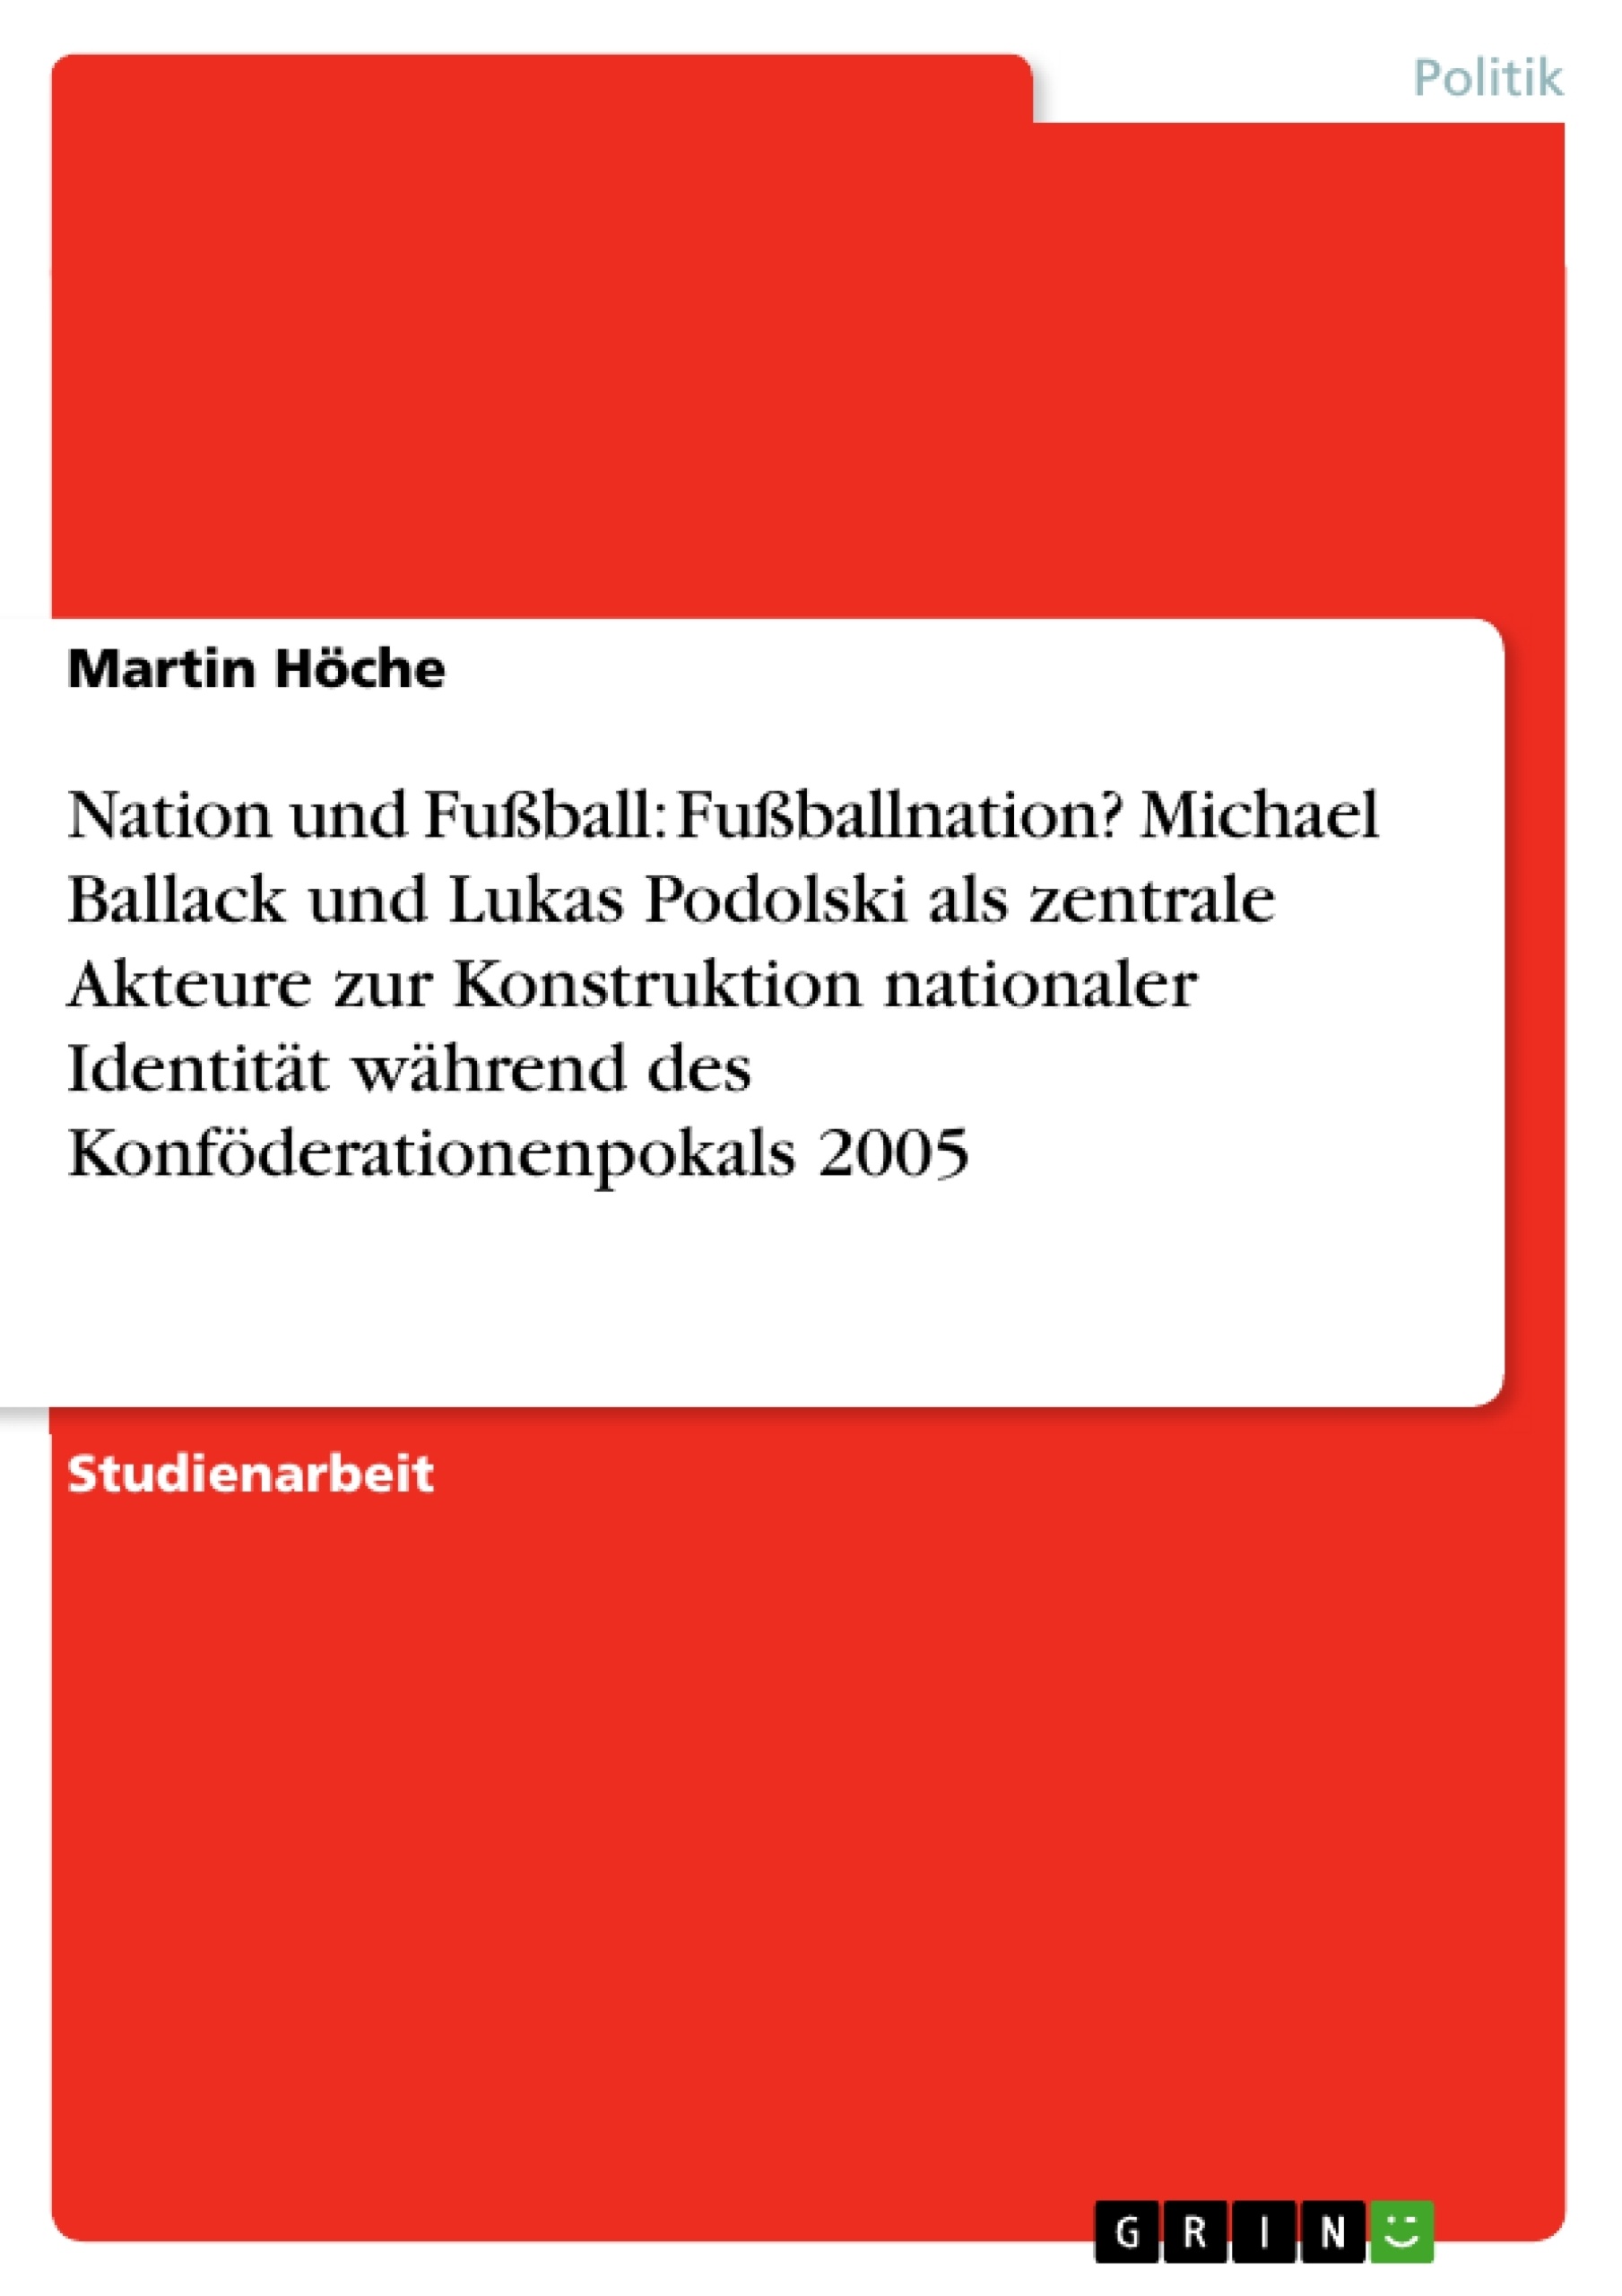 Titel: Nation und Fußball: Fußballnation? Michael Ballack und Lukas Podolski als zentrale Akteure zur Konstruktion nationaler Identität während des Konföderationenpokals 2005  